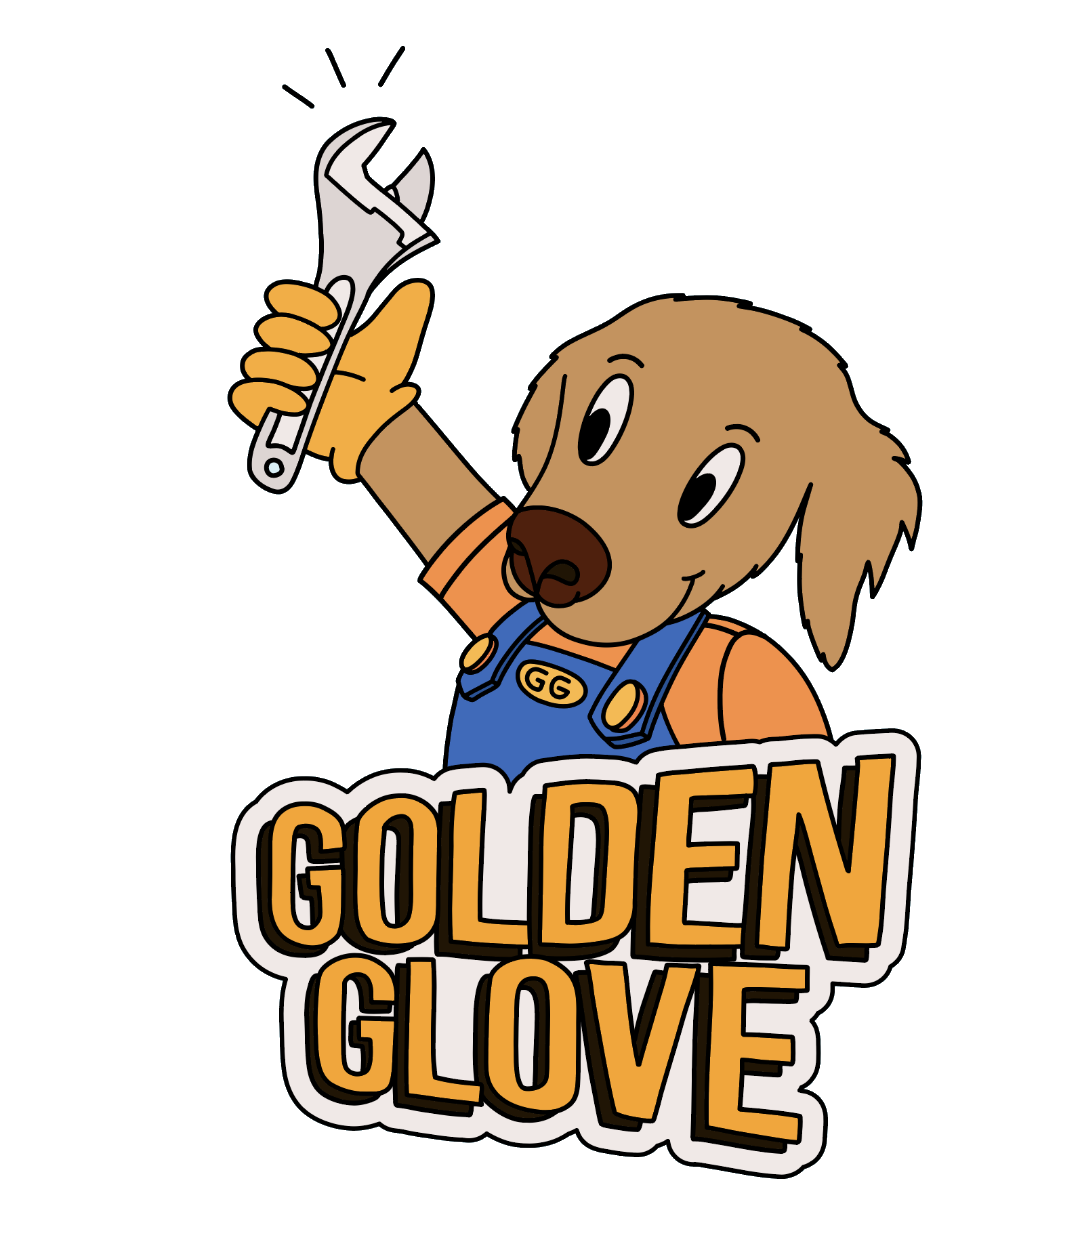 Golden Glove Services Premium Appliance Service Repair